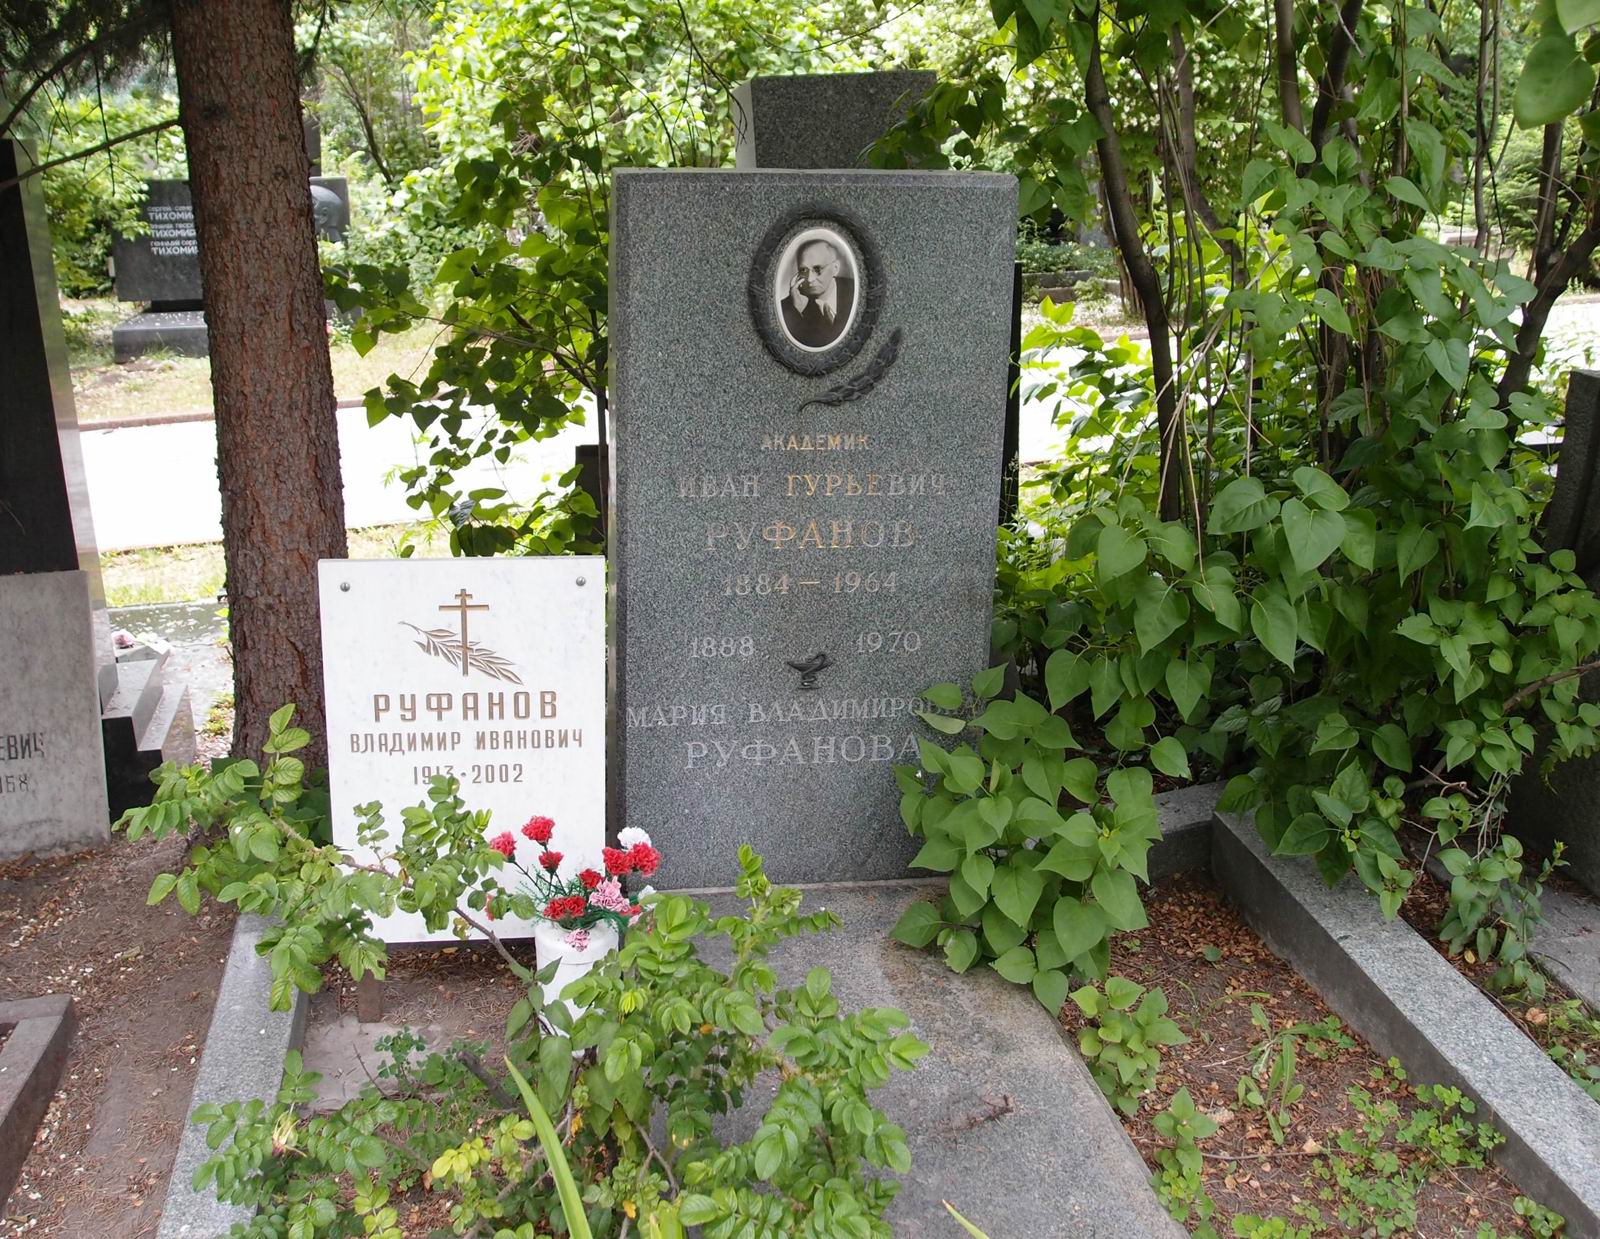 Памятник на могиле Руфанова И.Г. (1884-1964), на Новодевичьем кладбище (6-7-10).